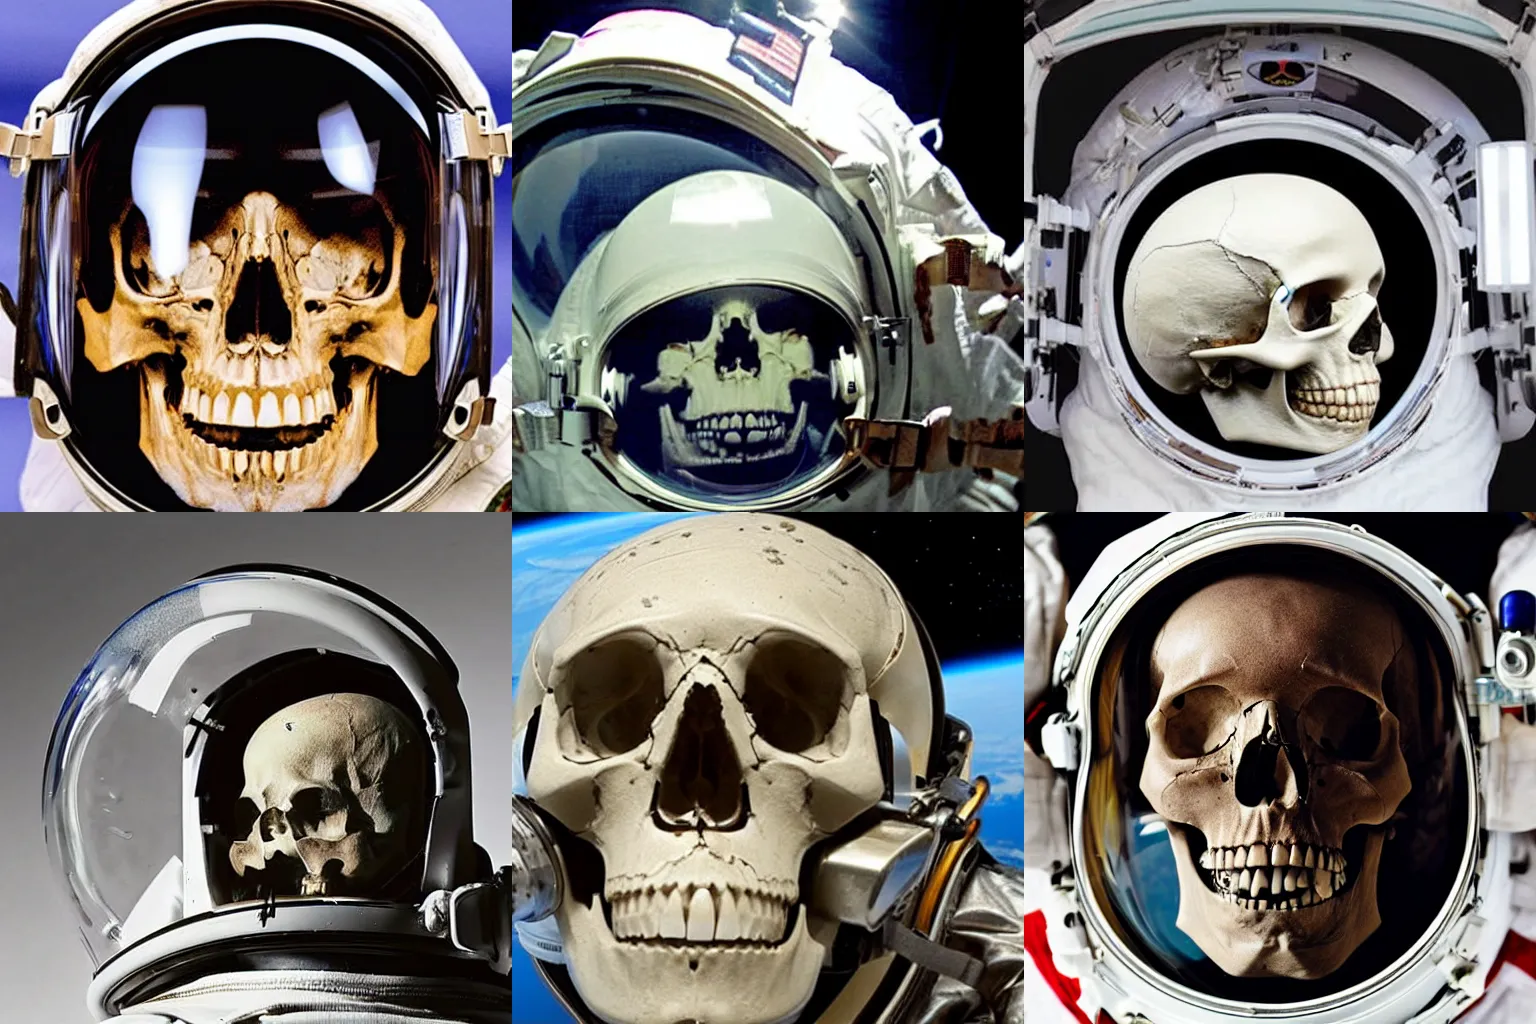 Prompt: a human skull inside an astronaut helmet with glass broken